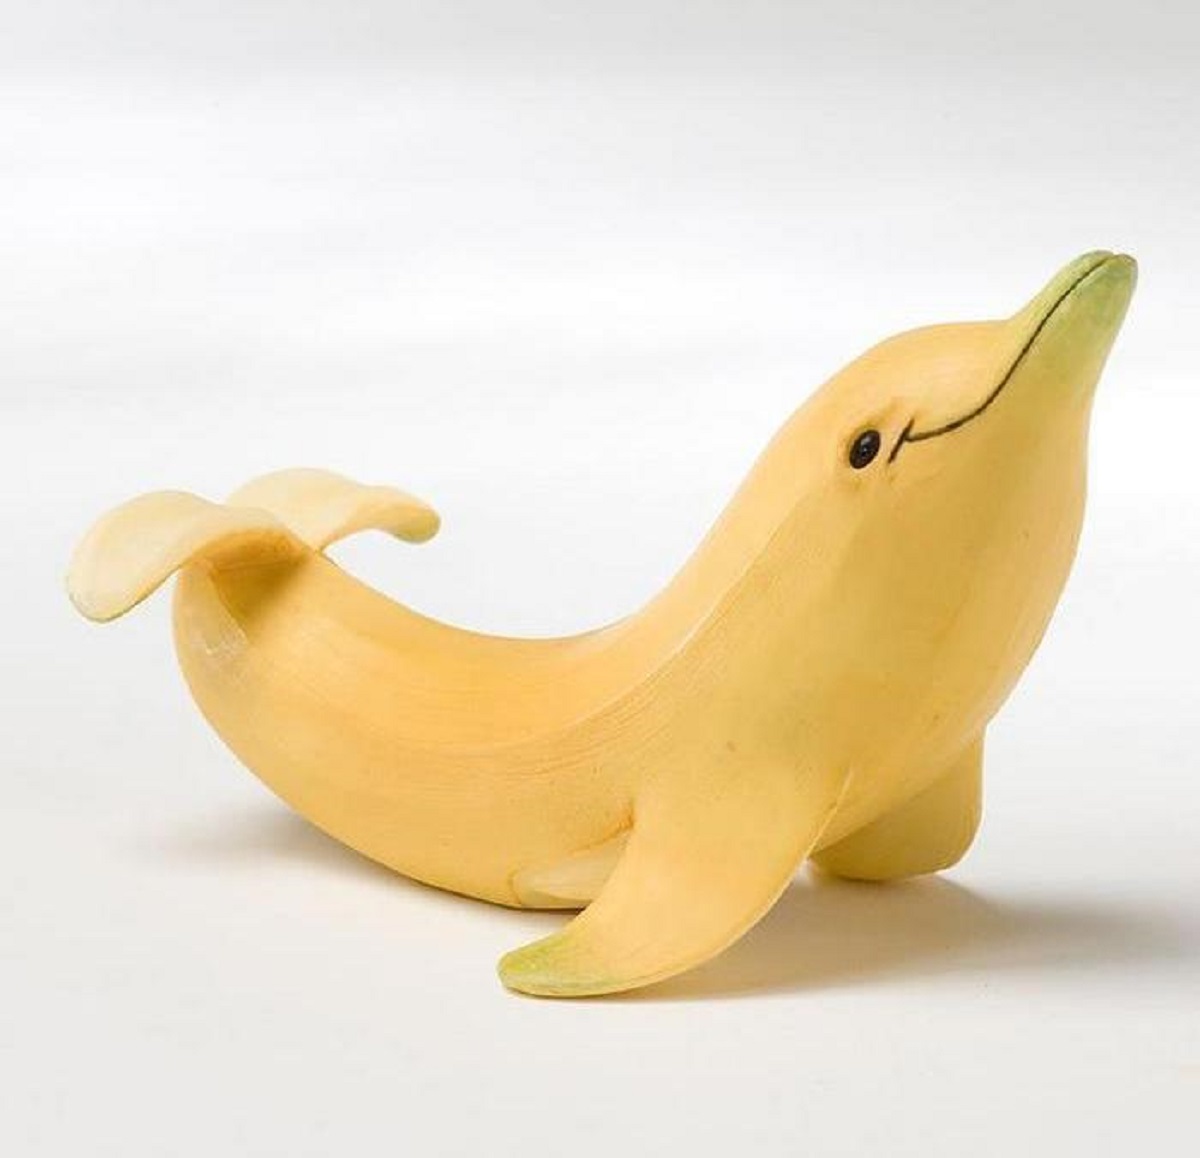 Banana made to look like a dolphin